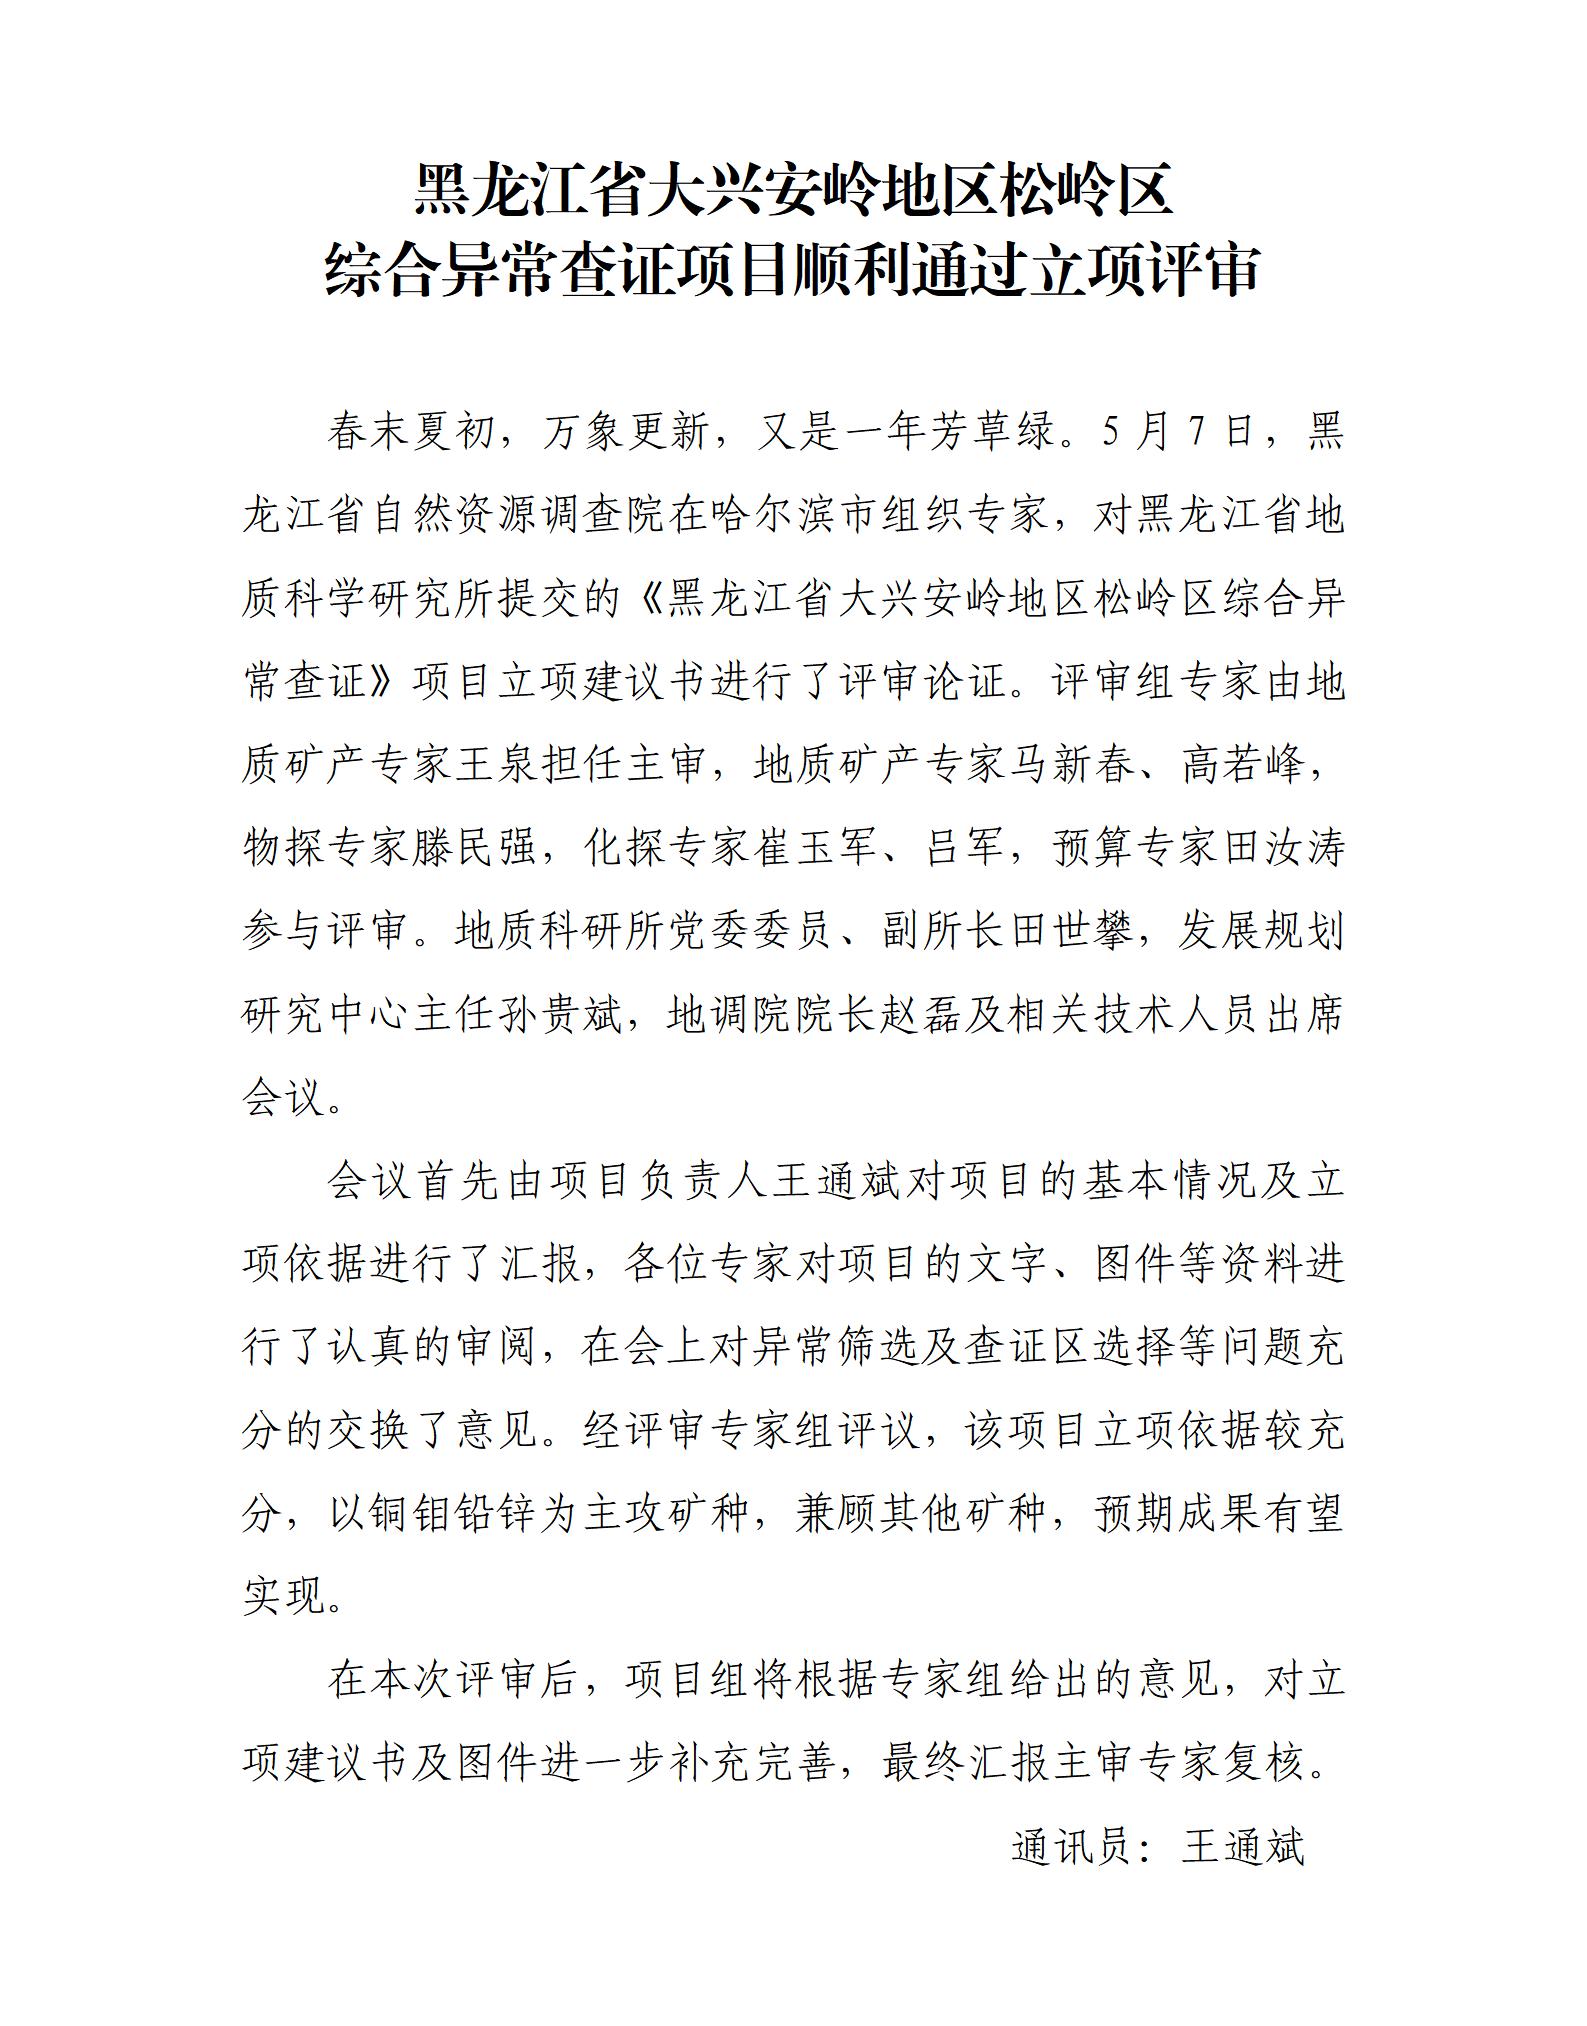 黑龙江省大兴安岭地区松岭区 综合异常查证项目顺利通过立项评审